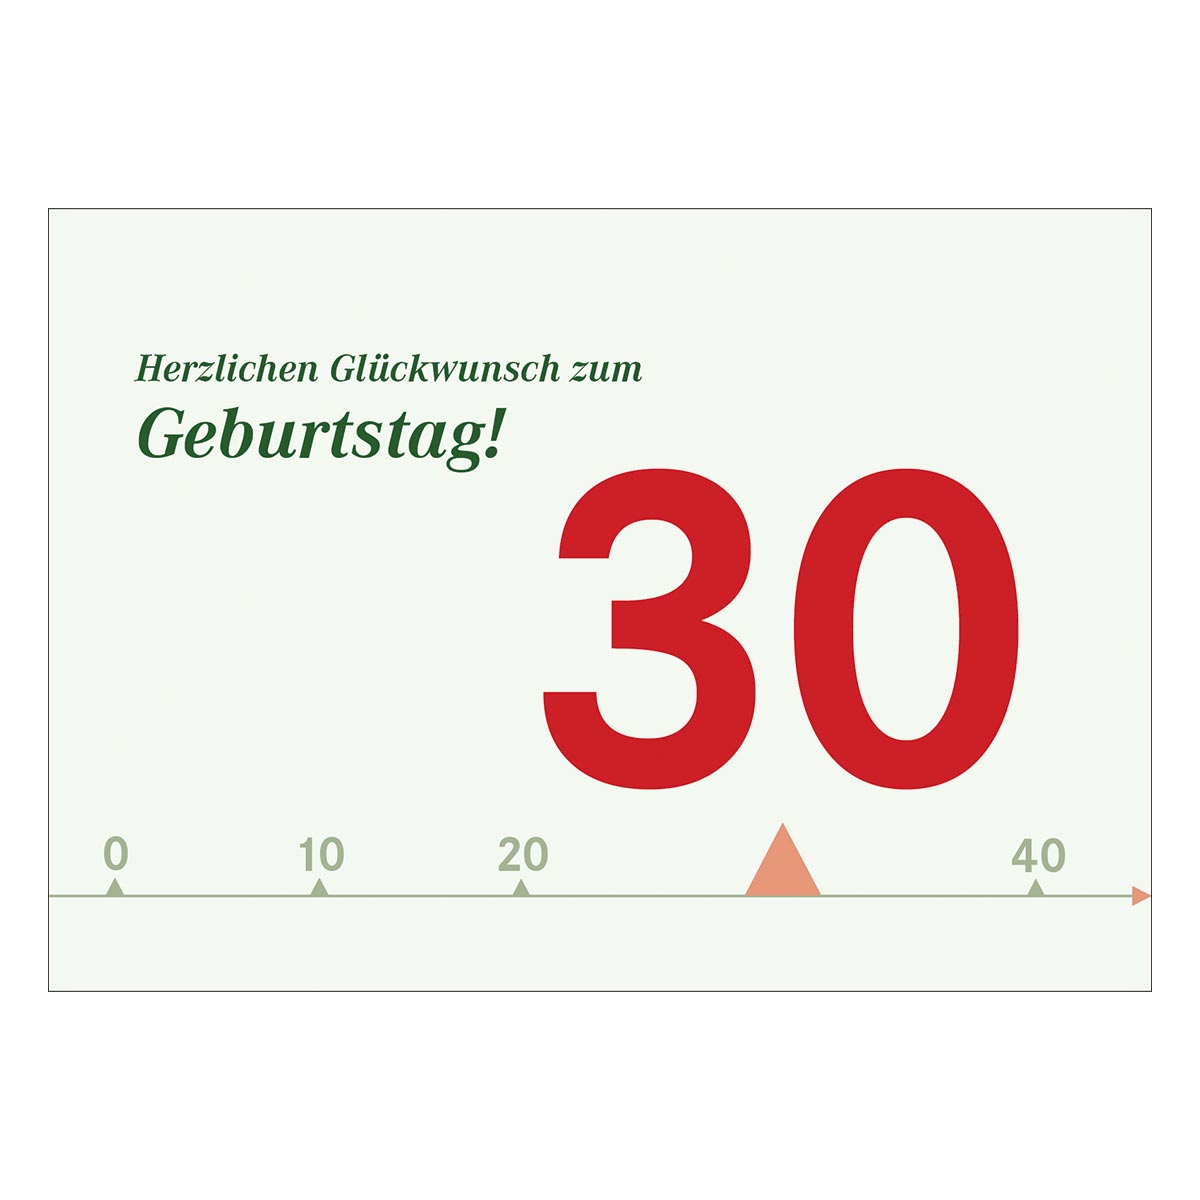 Feine Geburtstagskarte Zum 30 Geburtstag Kartenkaufrausch De